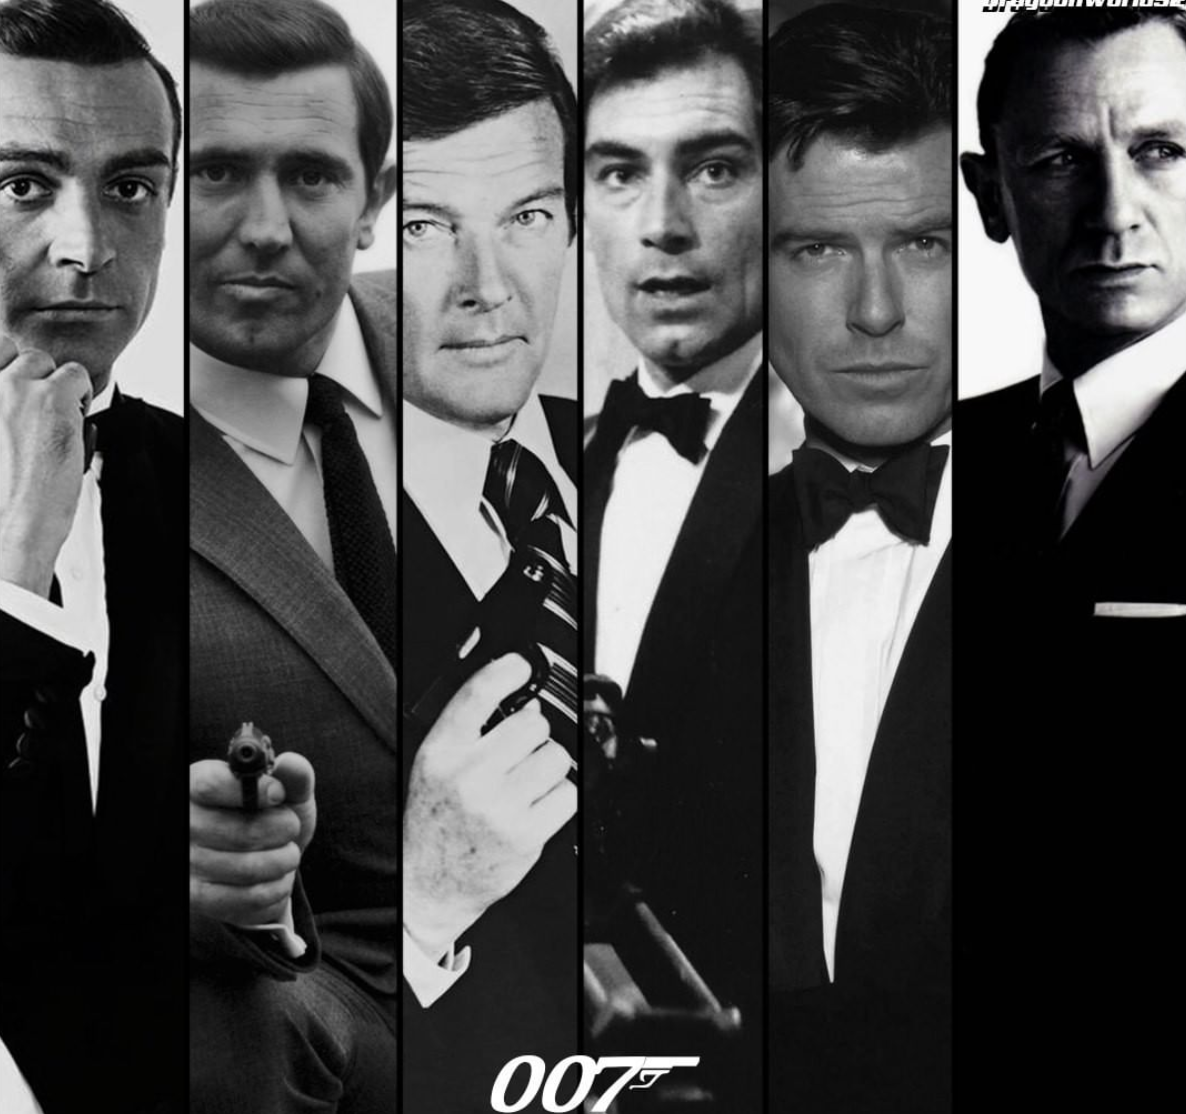 James Bond viola femei și le hărțuia, susține regizorul ultimei serii „No time to Die” 